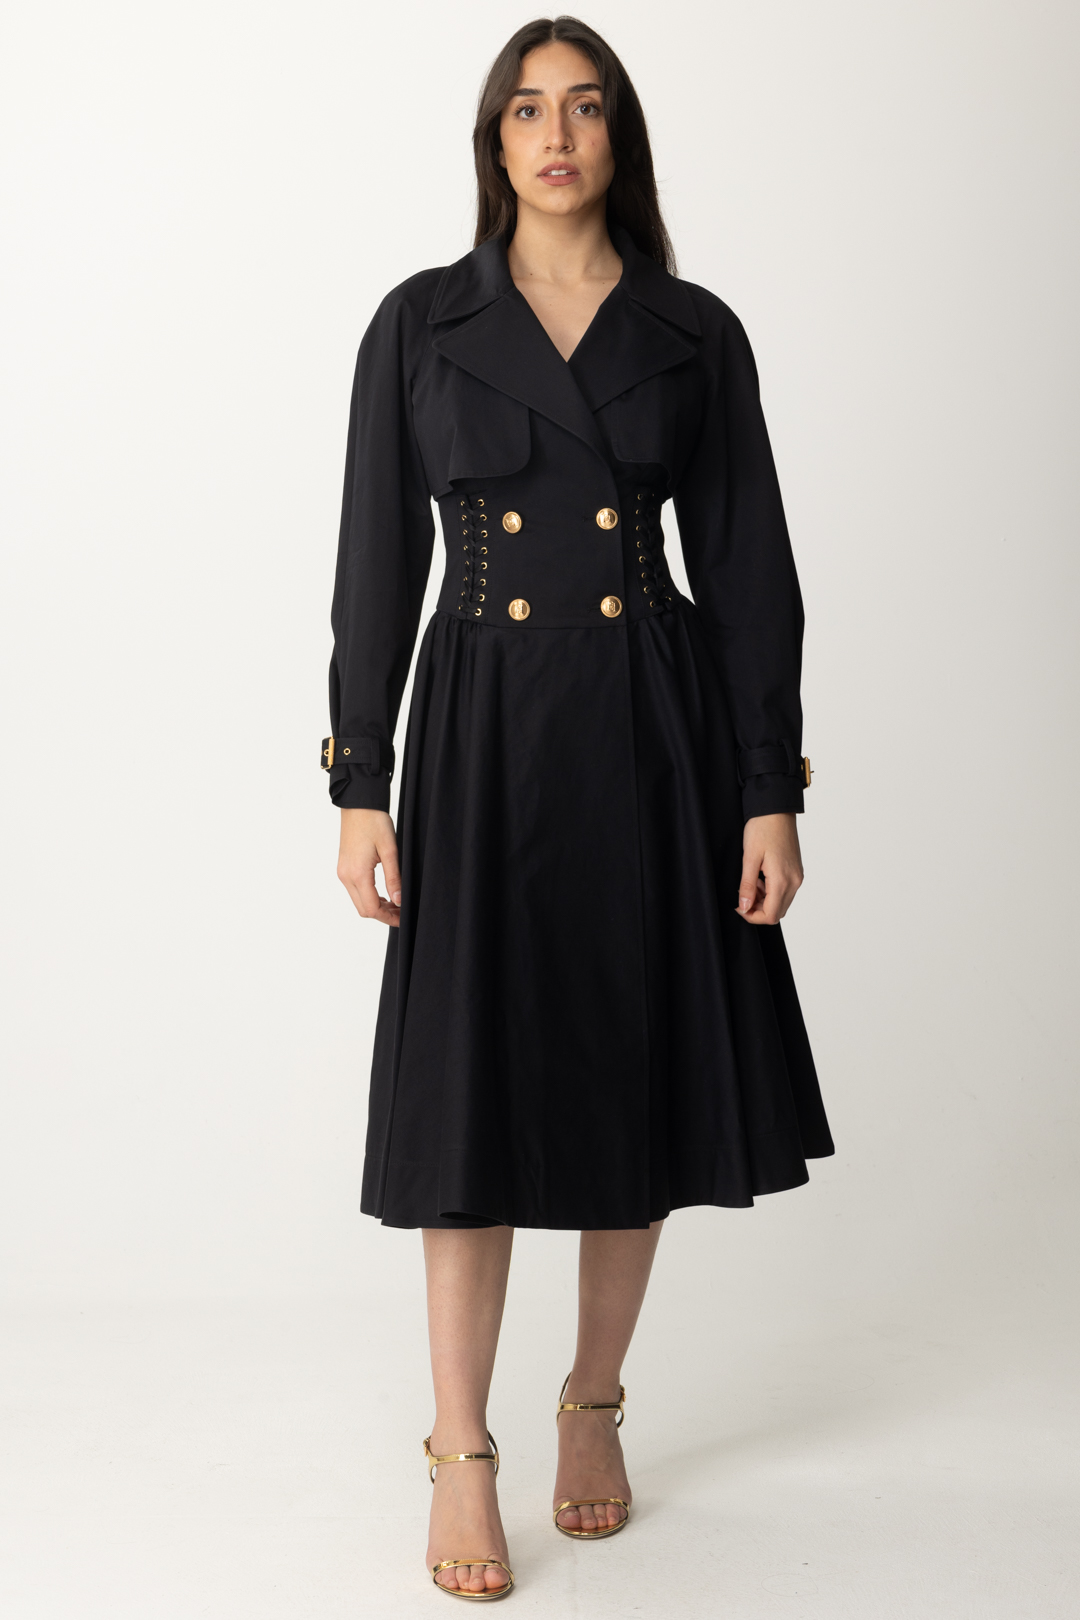 Vorschau: Elisabetta Franchi Zweireihiger Trenchcoat aus Baumwolle Nero